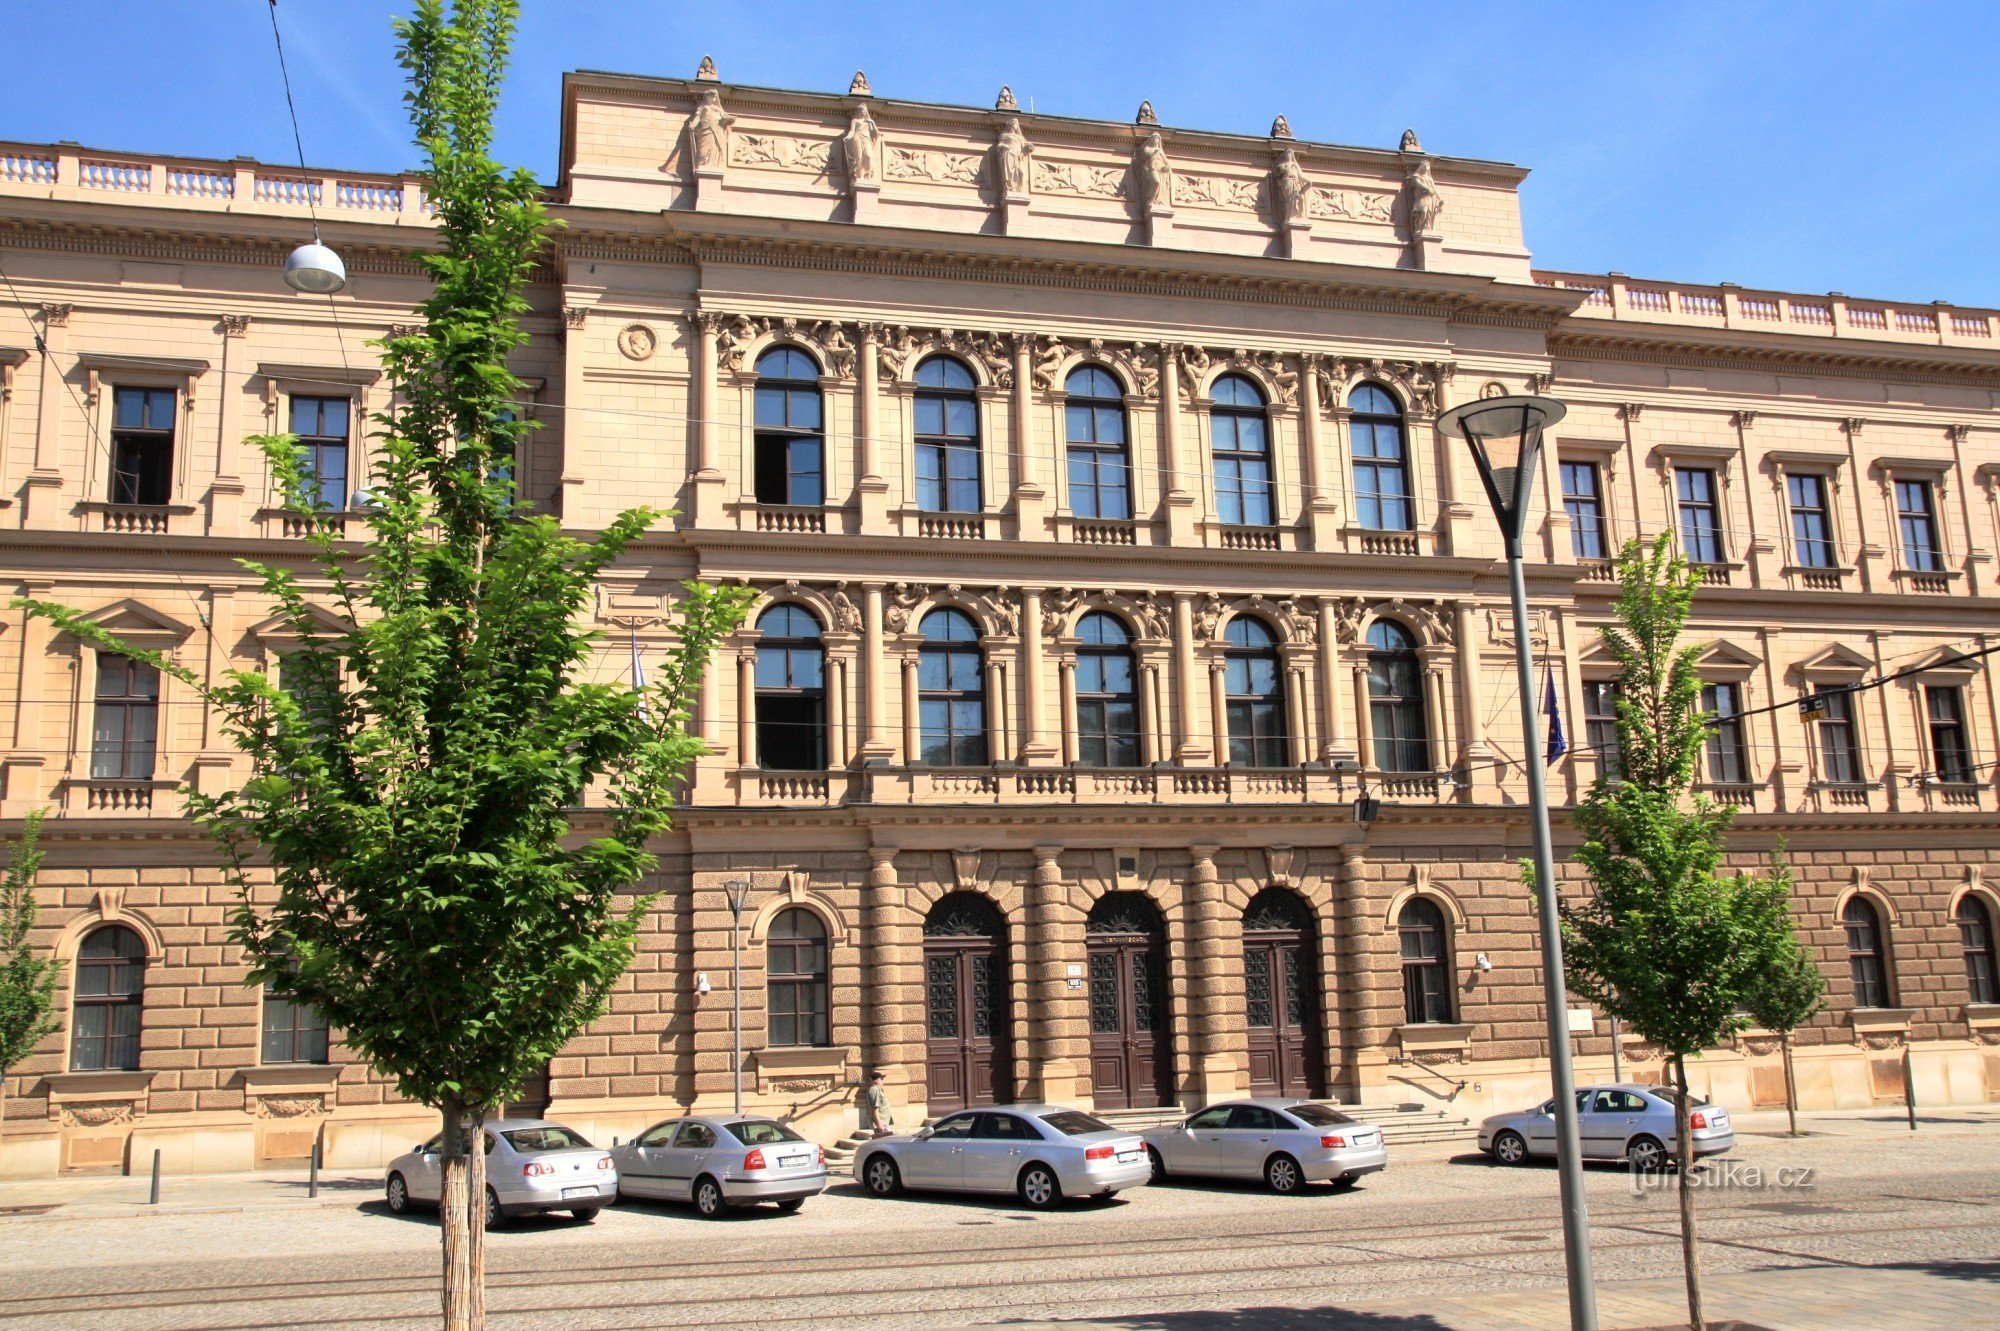 ブルノ - 憲法裁判所